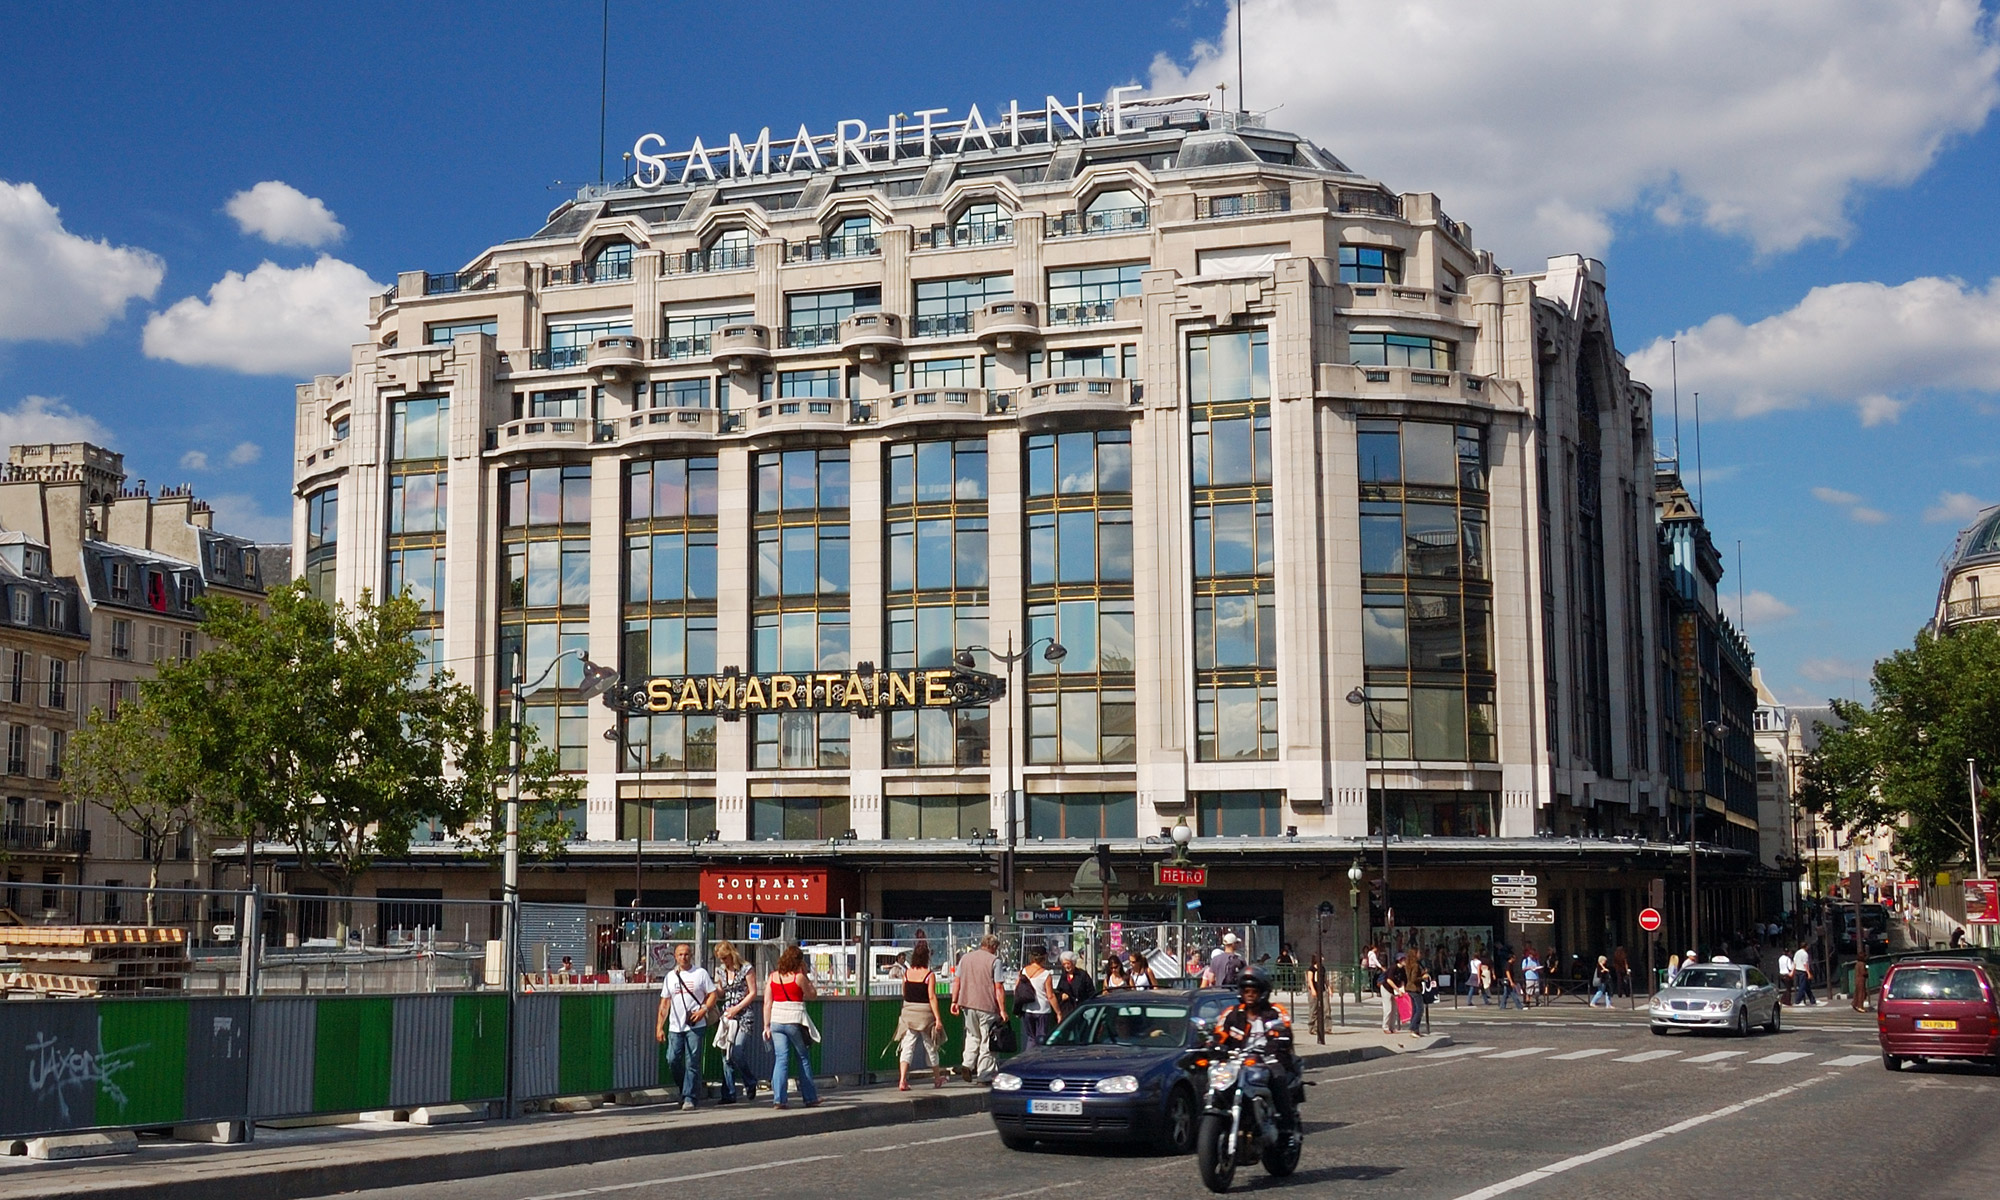 停业 15 年后，法国莎玛丽丹百货将于明年 4 月重新开业